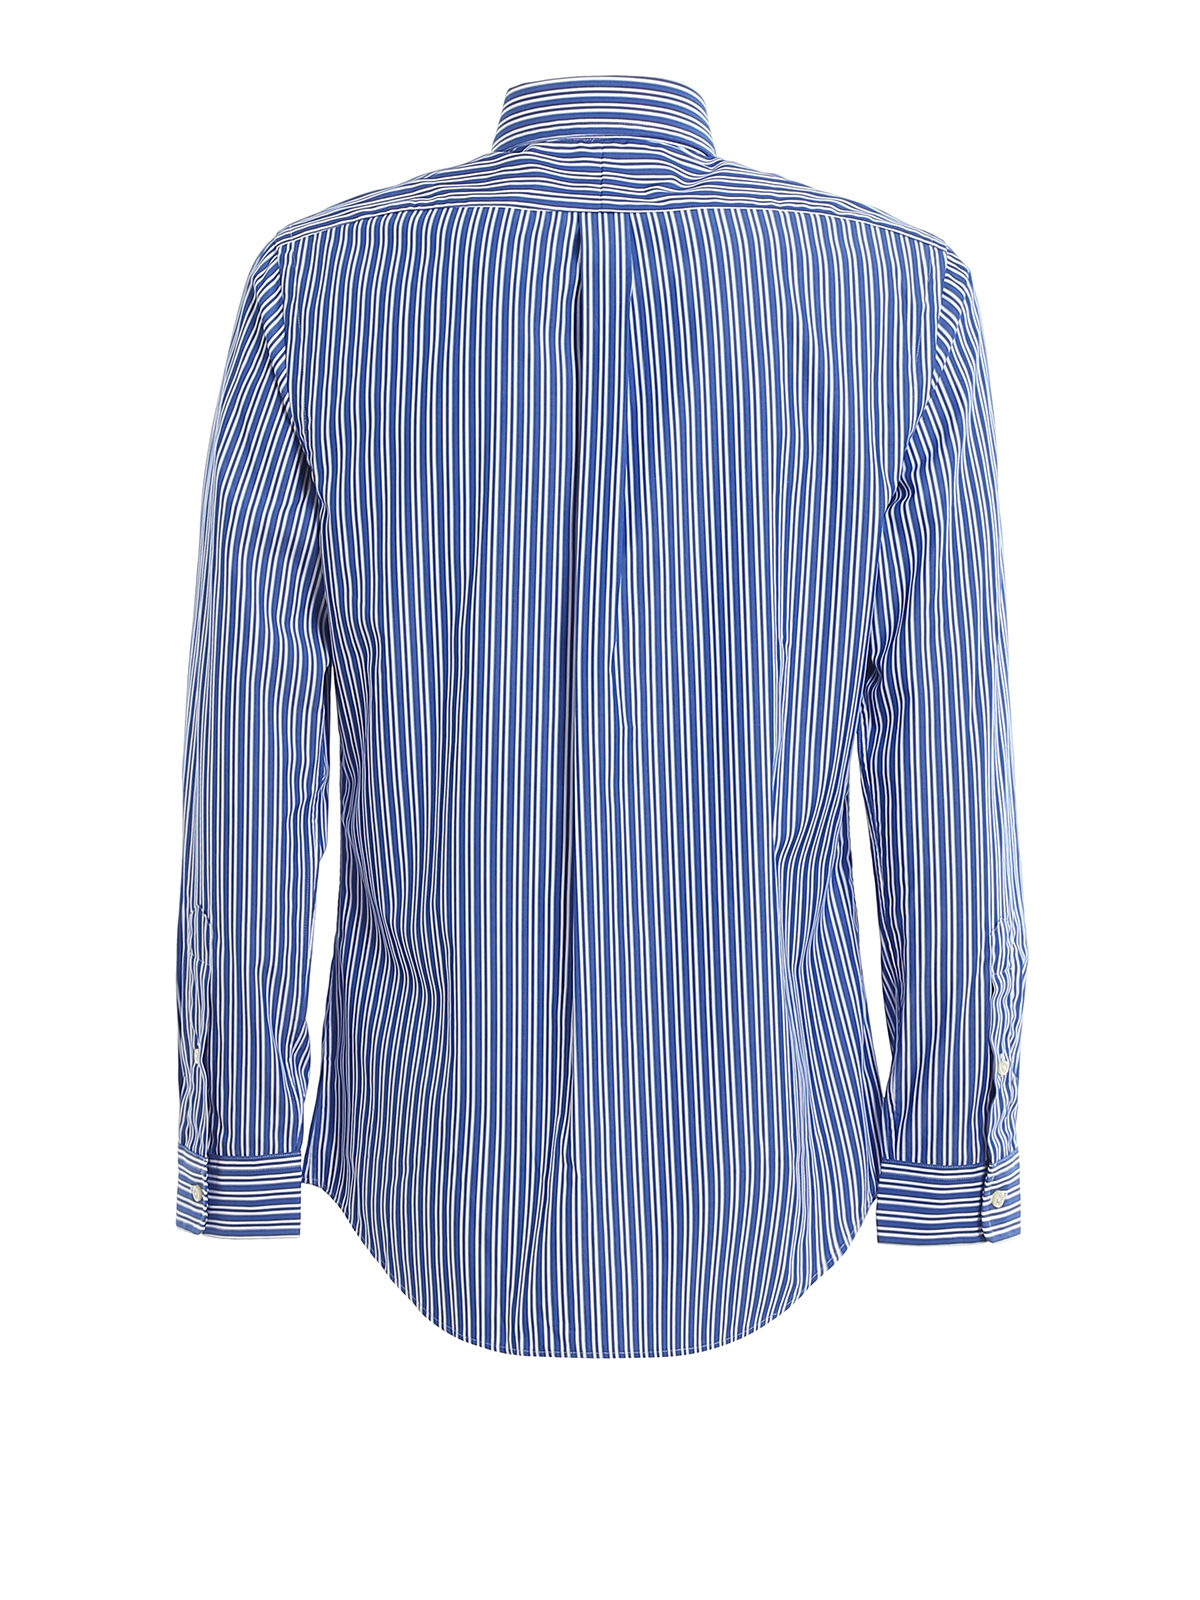 Polo Ralph Lauren - Camicia blu a righe in cotone - camicie - 710787320011